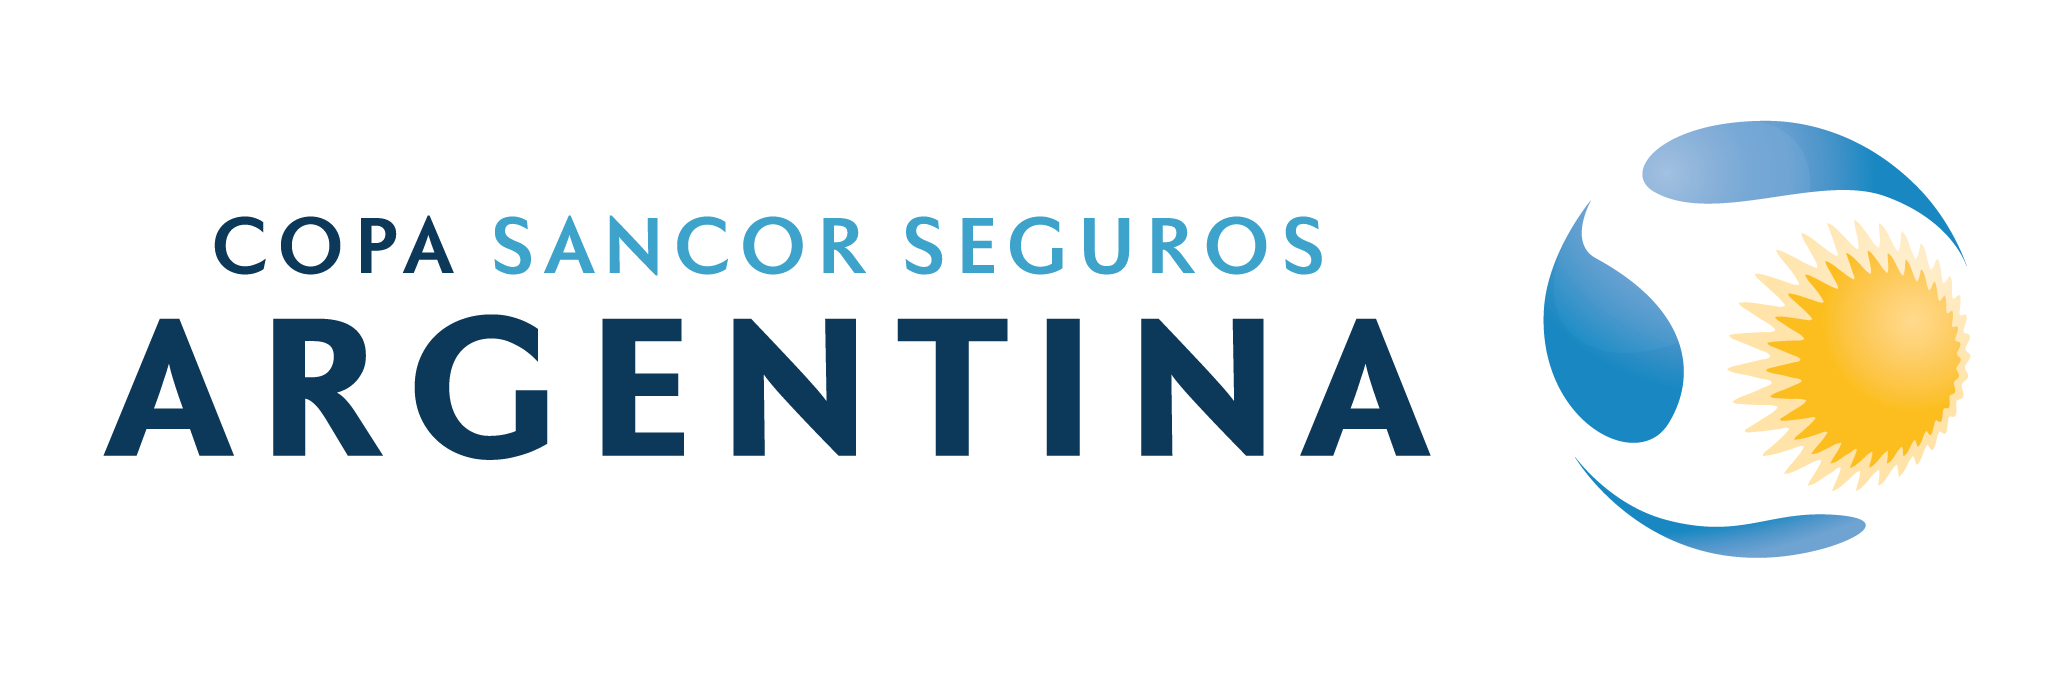 Resultado de imagen para Logo Copa Argentina png